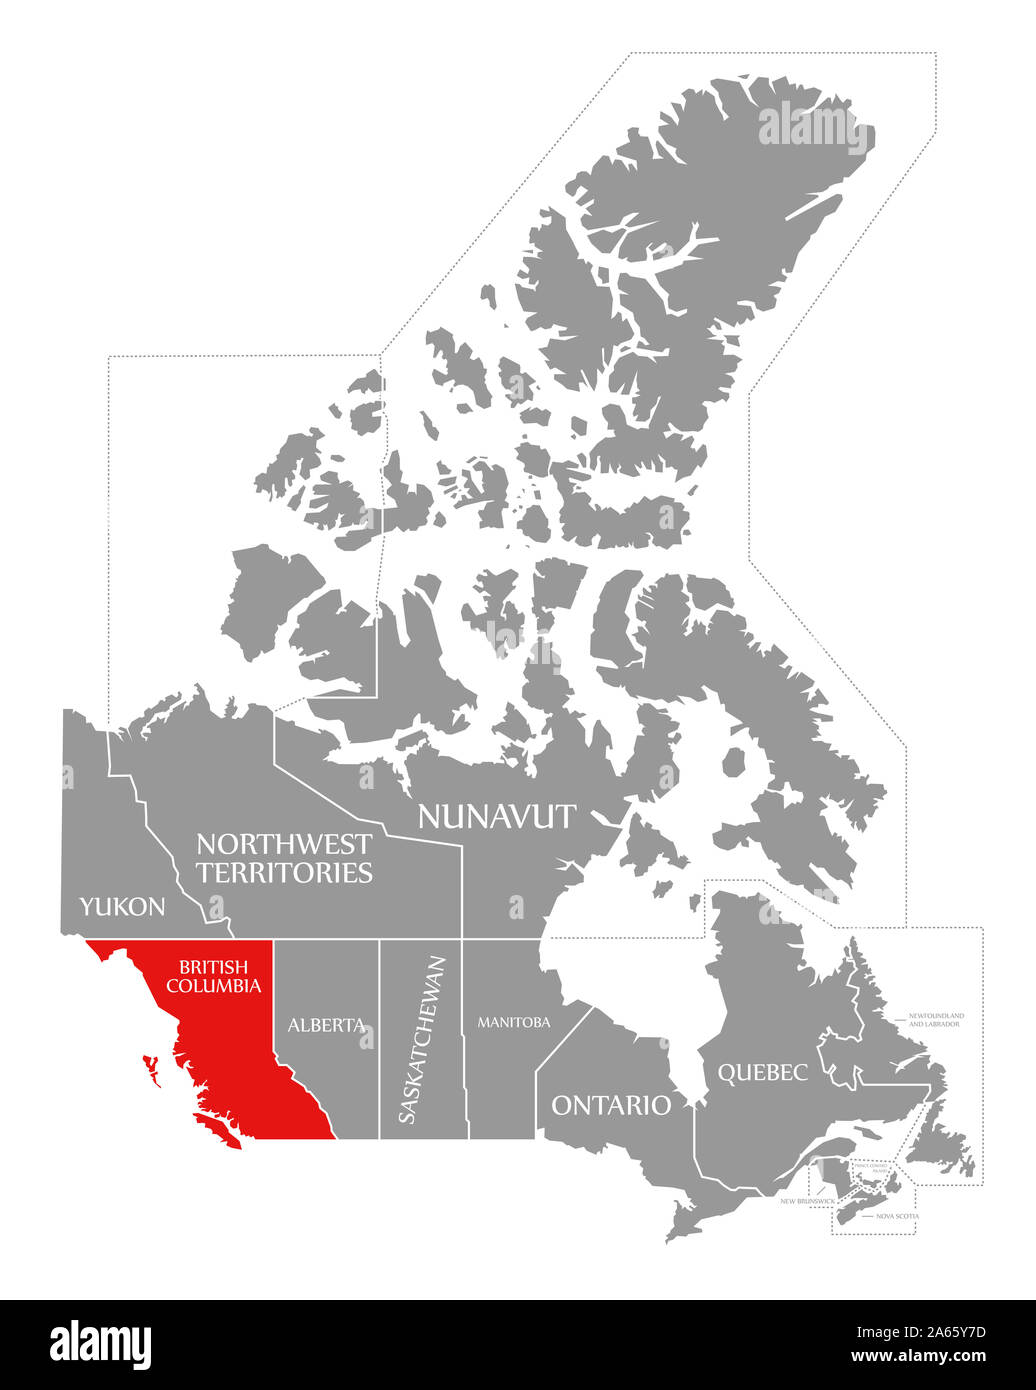 La Colombie-Britannique en surbrillance rouge dans la carte du Canada Banque D'Images